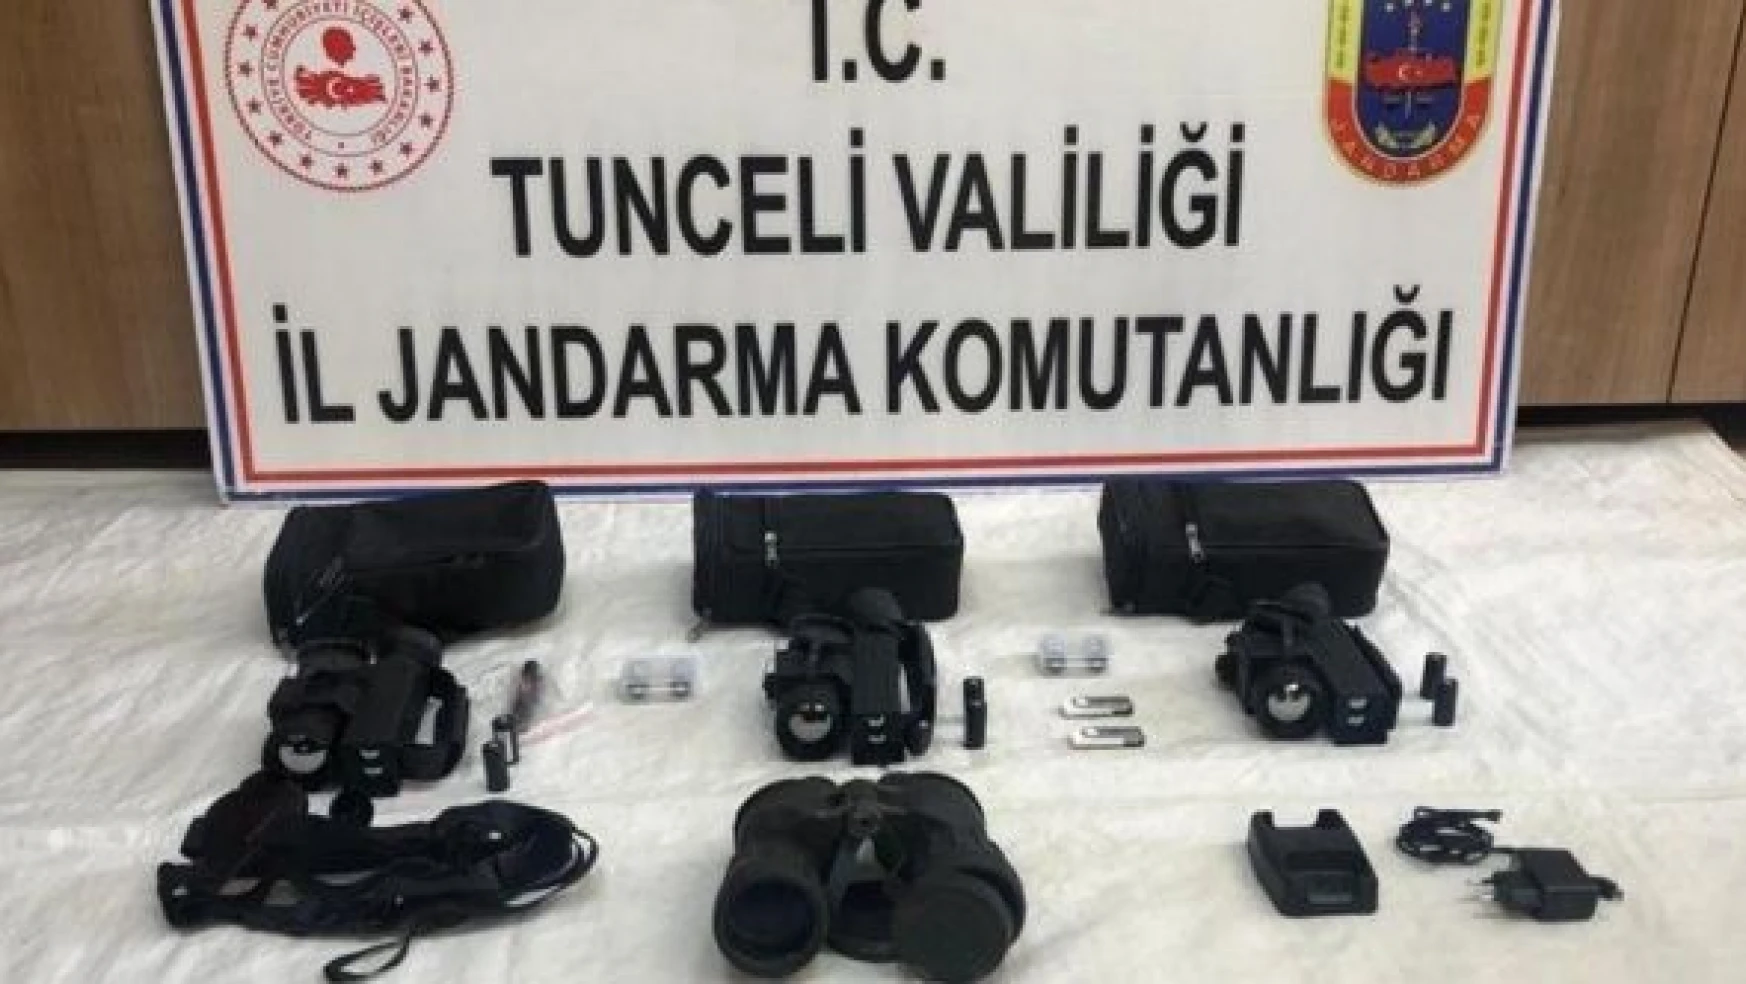 Tunceli'de teröristlere ait sığınaklar imha edildi!